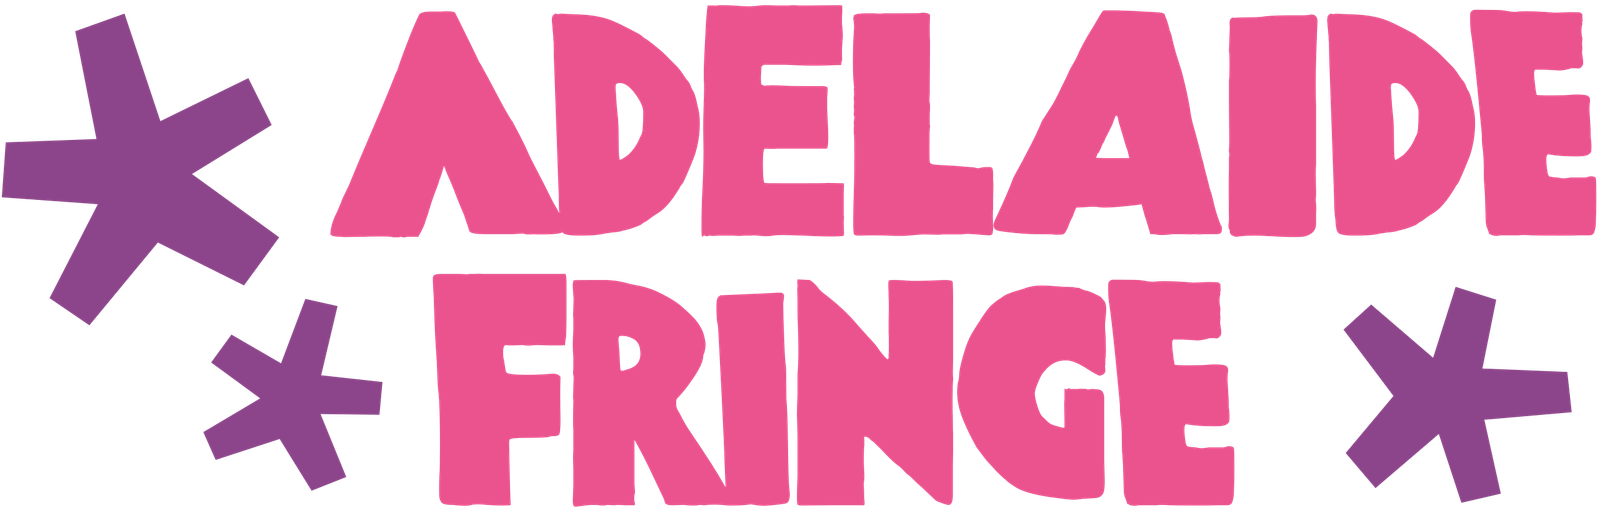 Adelaide_Fringe_logo